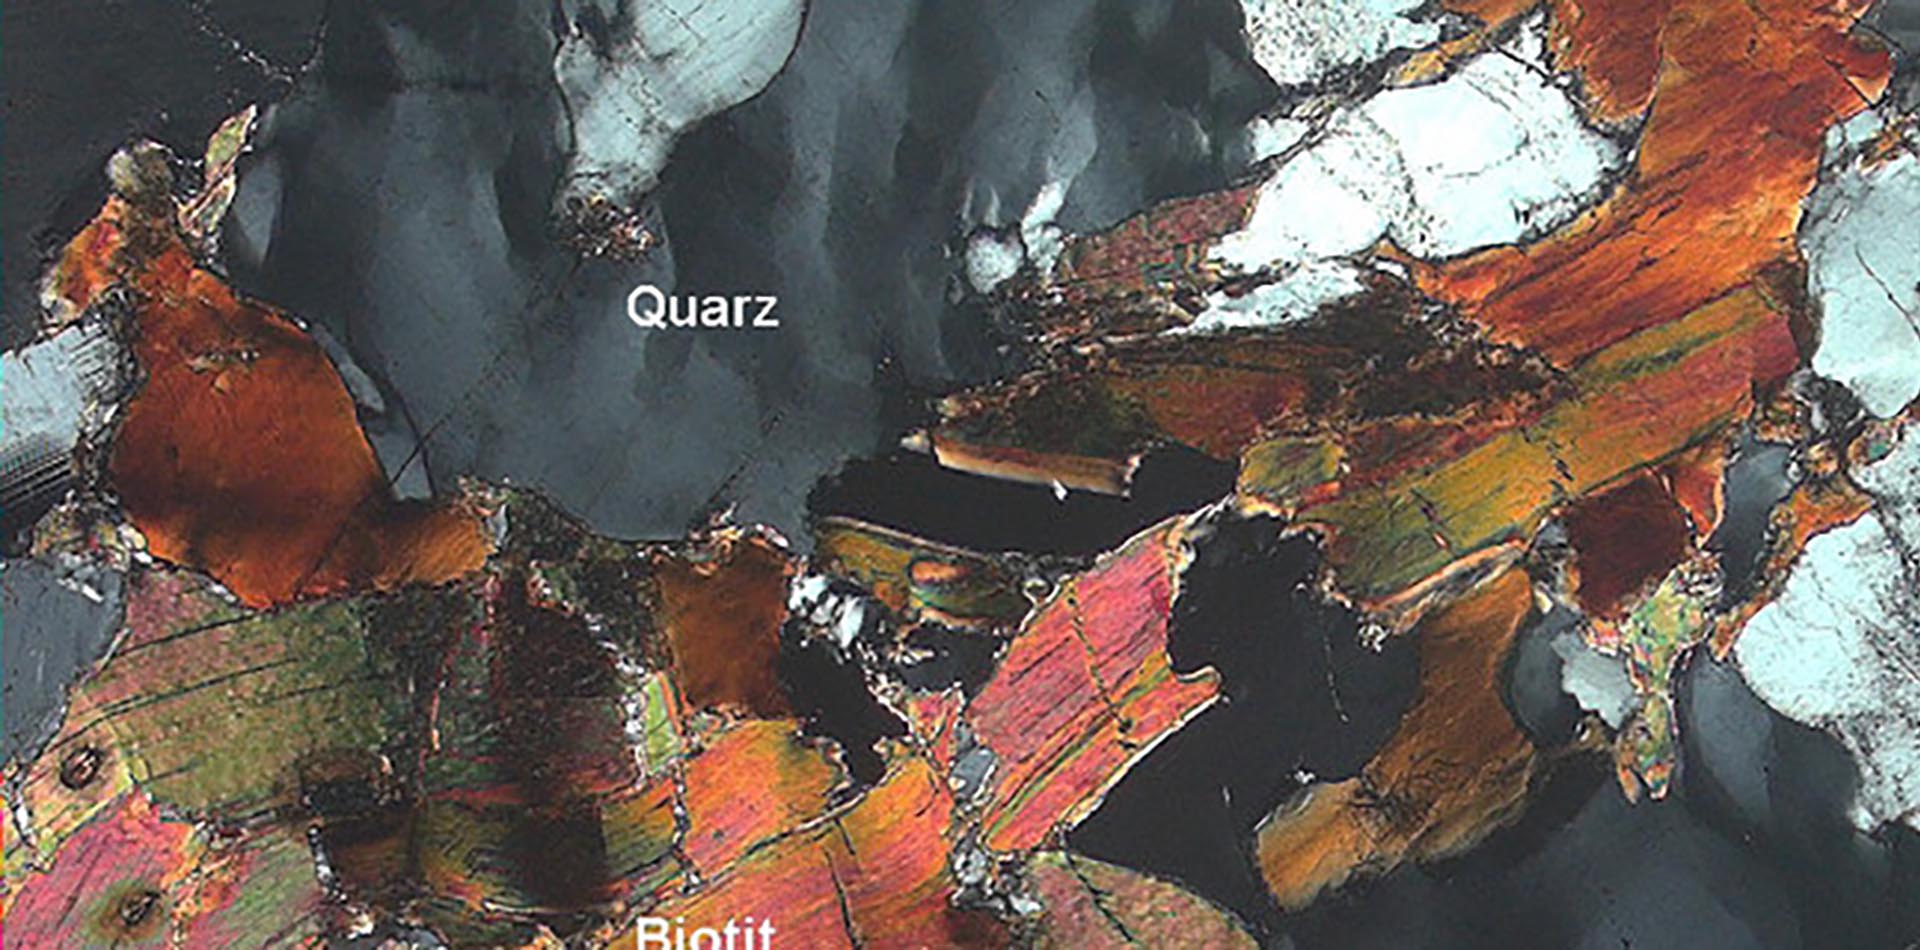 Dünnschliff einer Gestreinsprobe, Quarz und Biotit bezeichnet